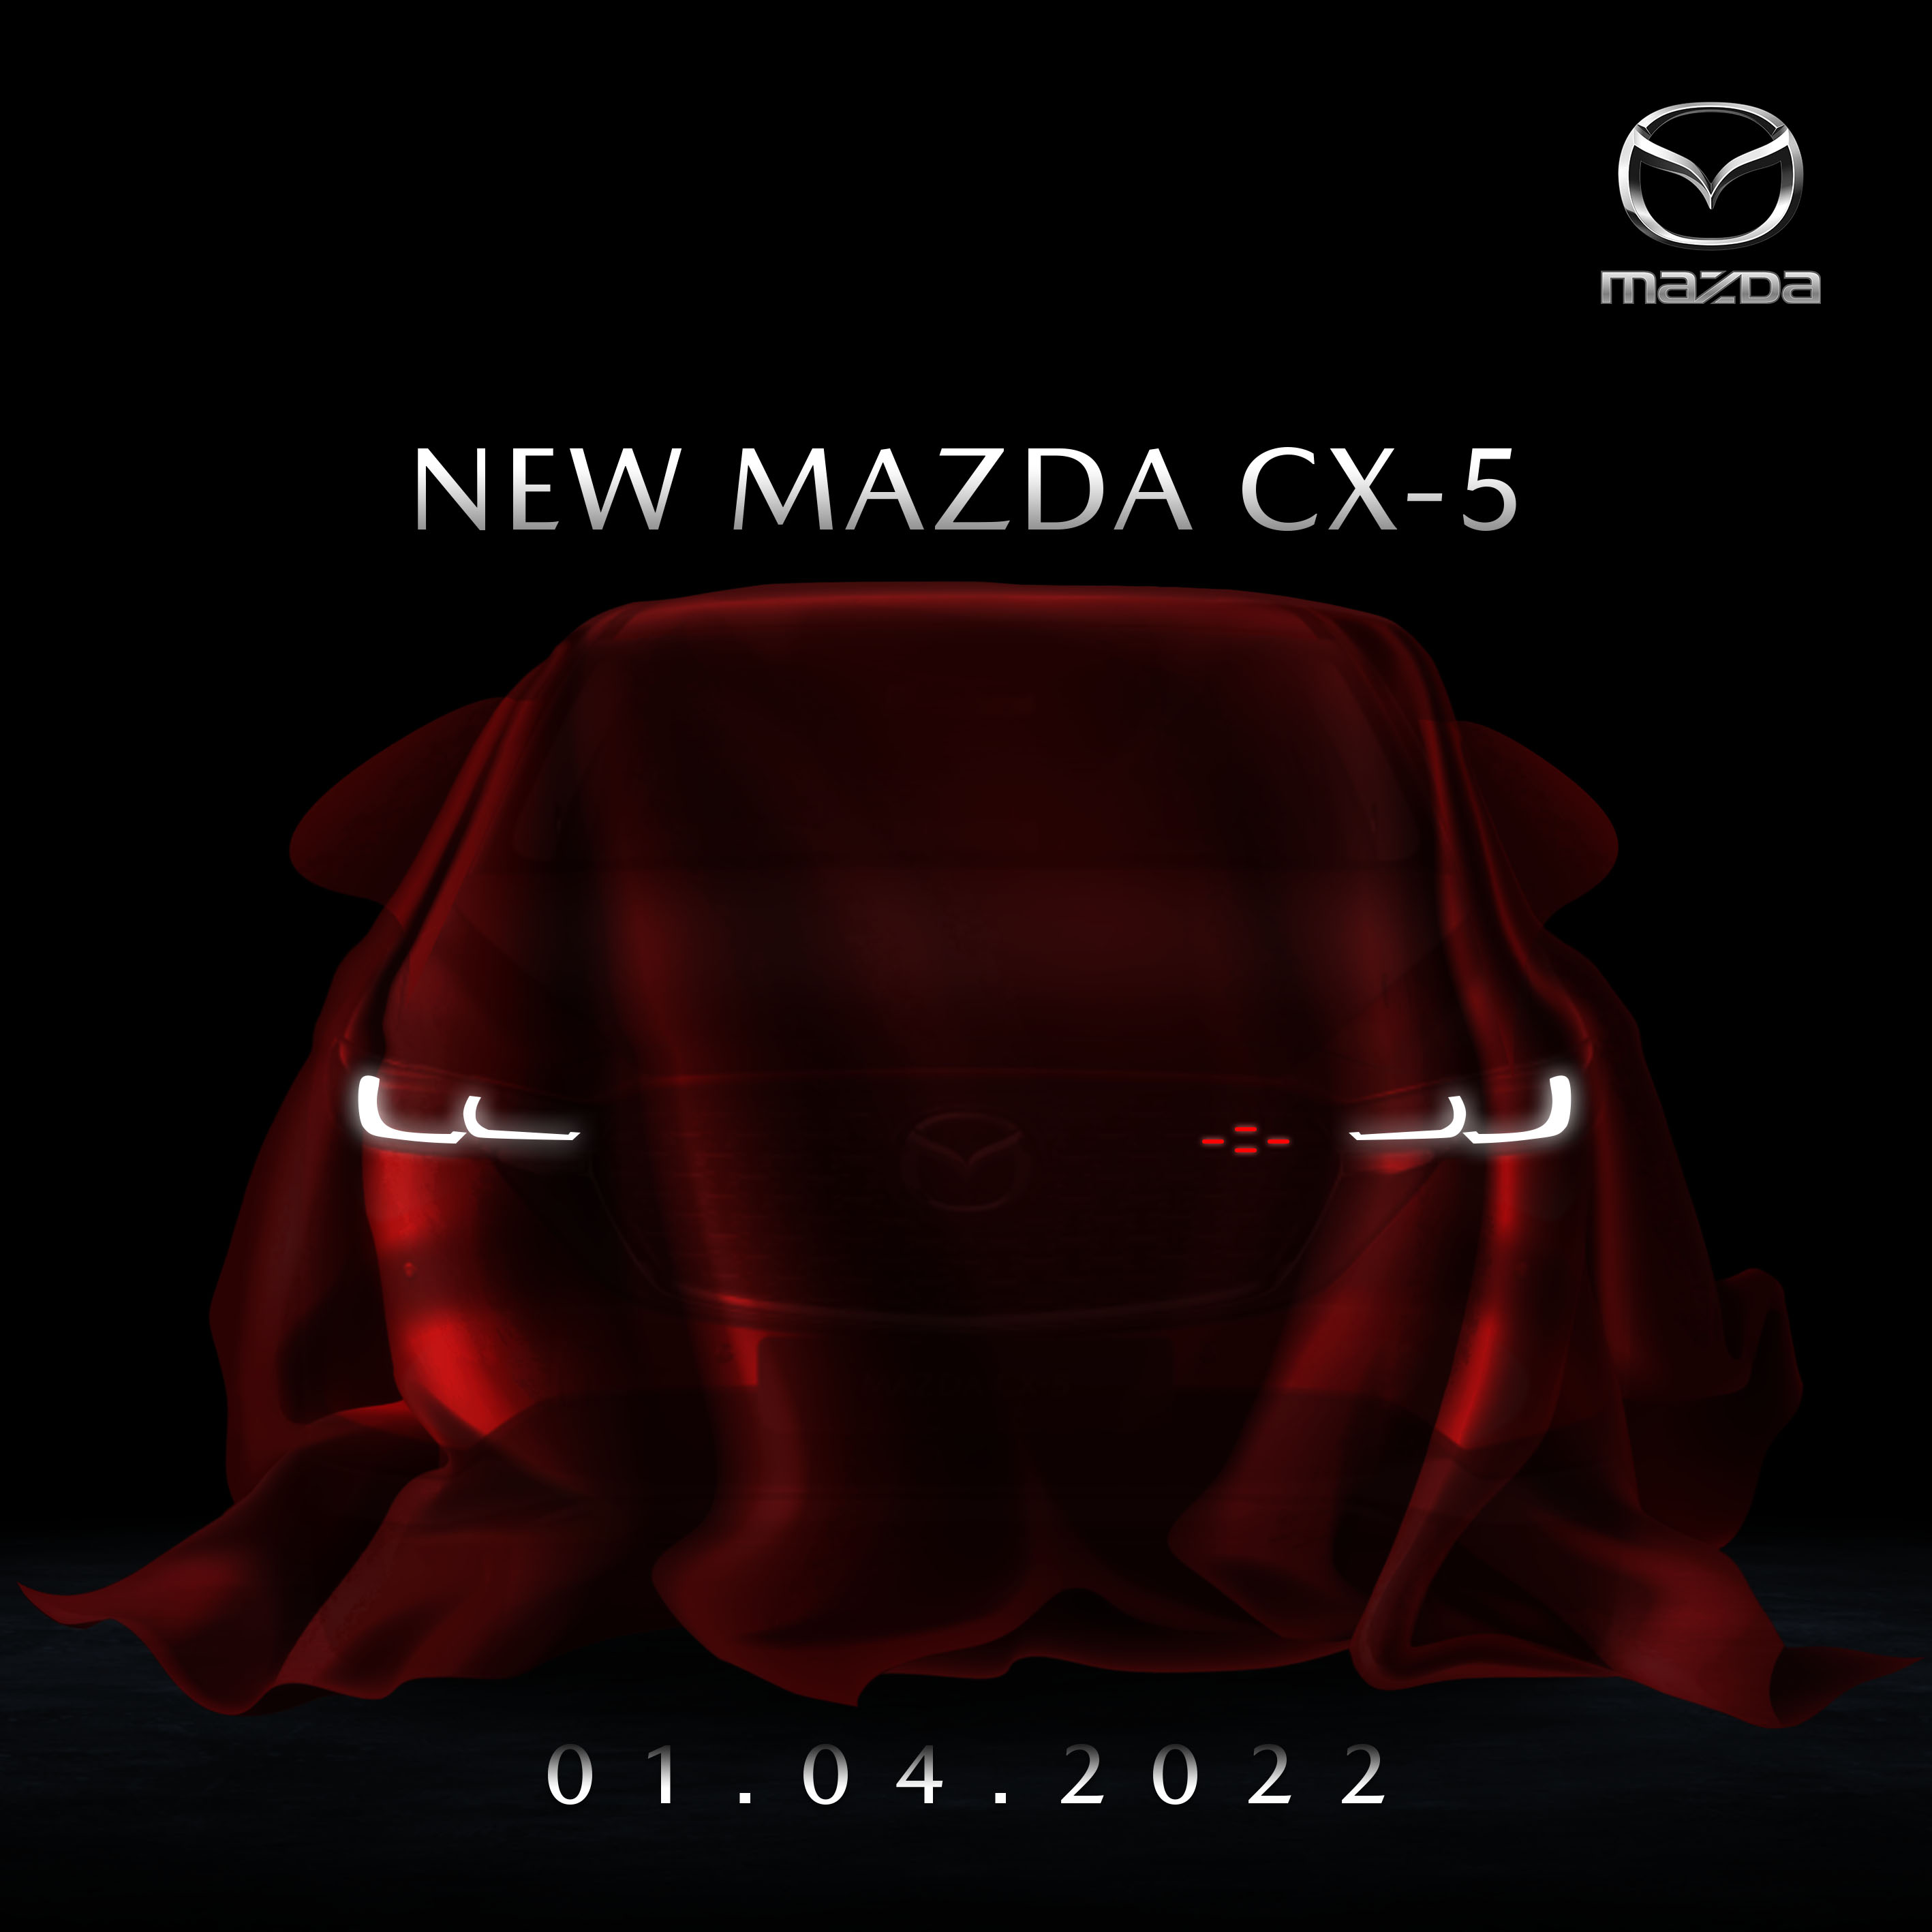 Pre-Order The New Mazda CX-5